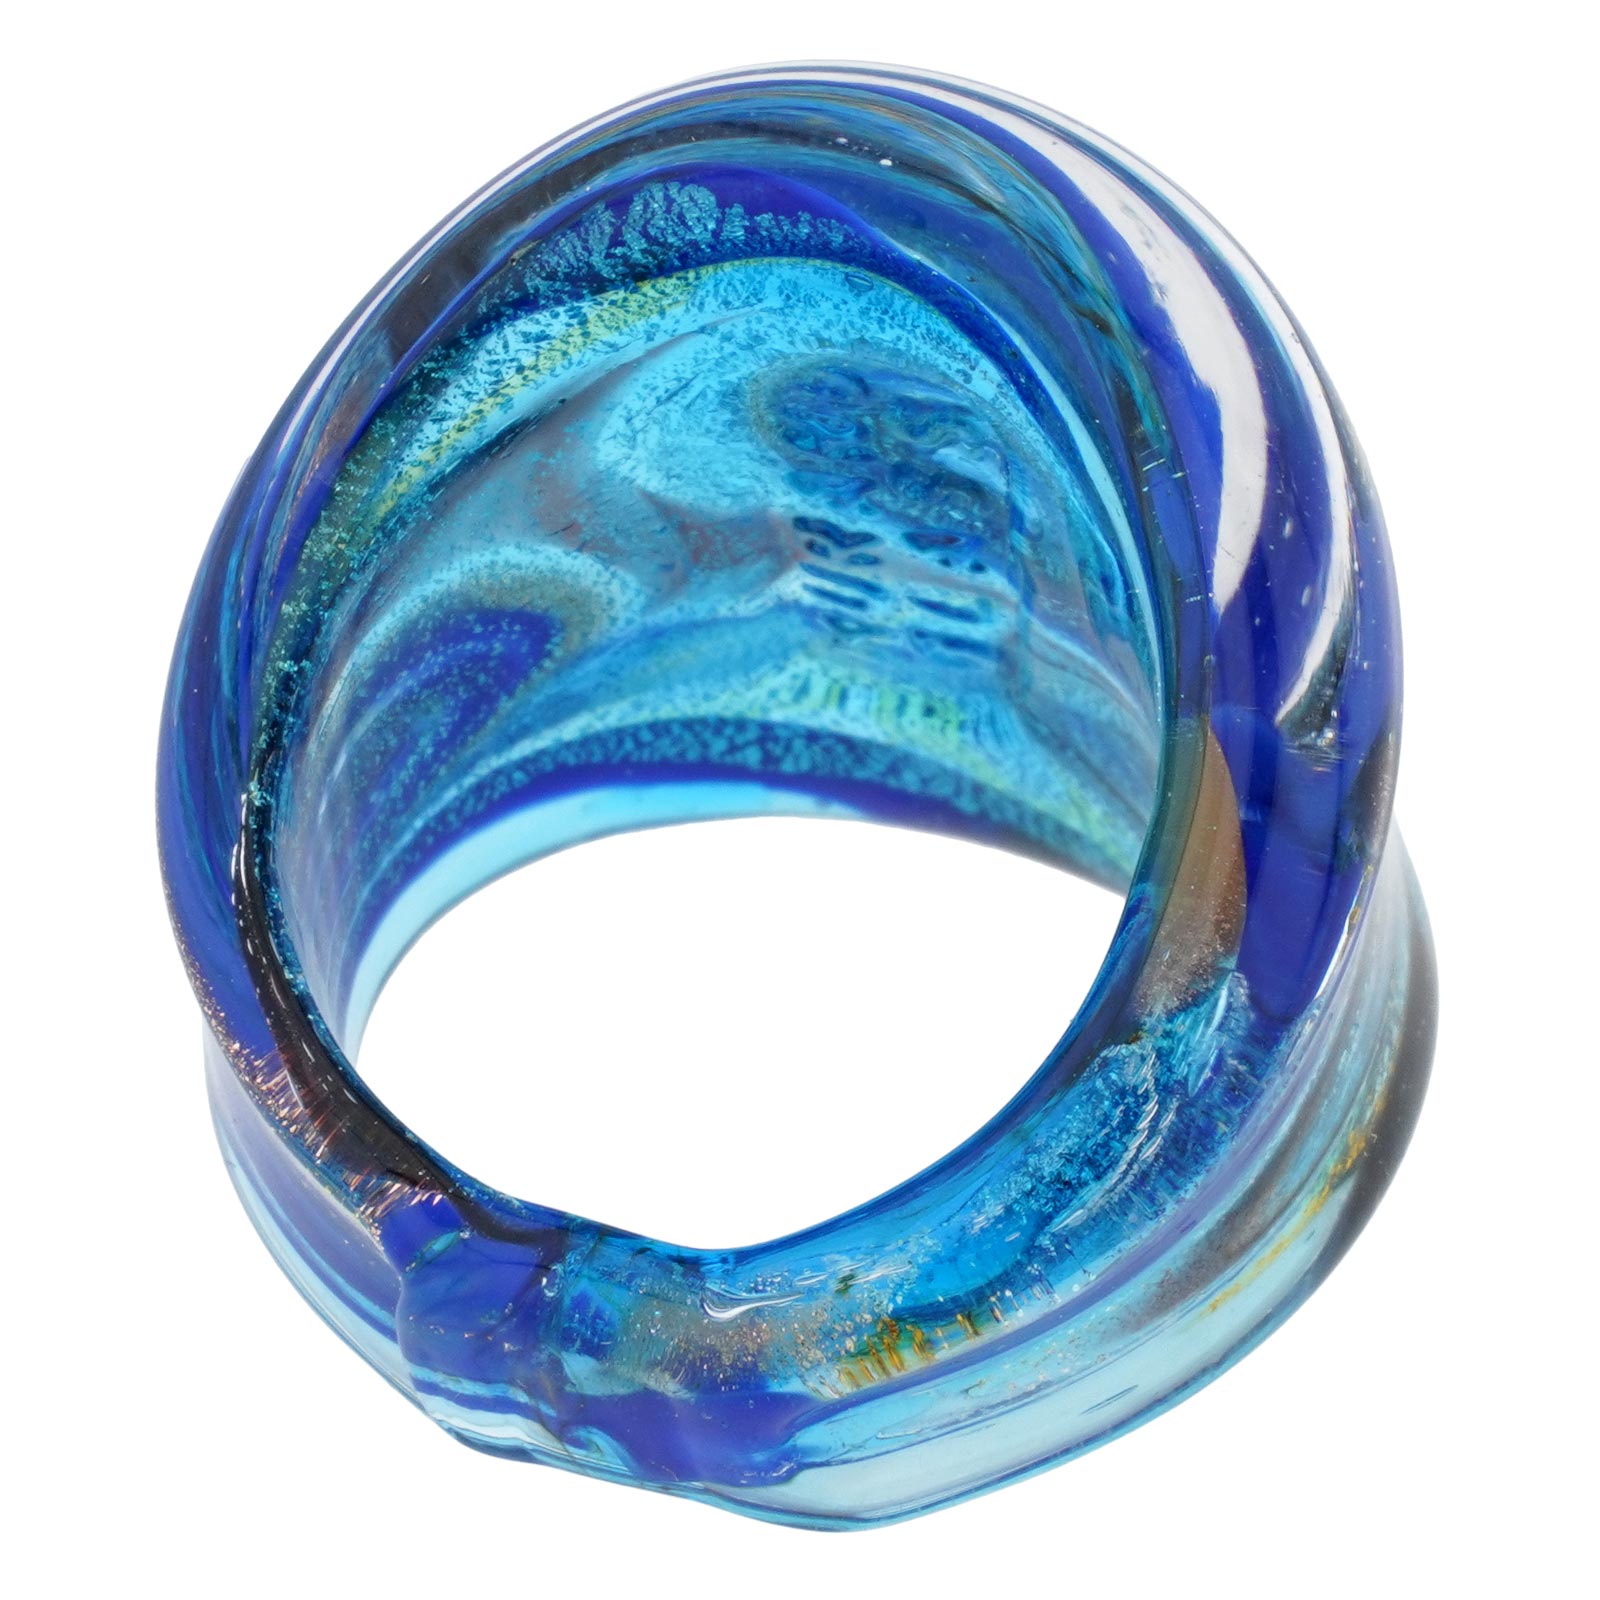 Murano Swirls Ring - Gold Aqua Blue